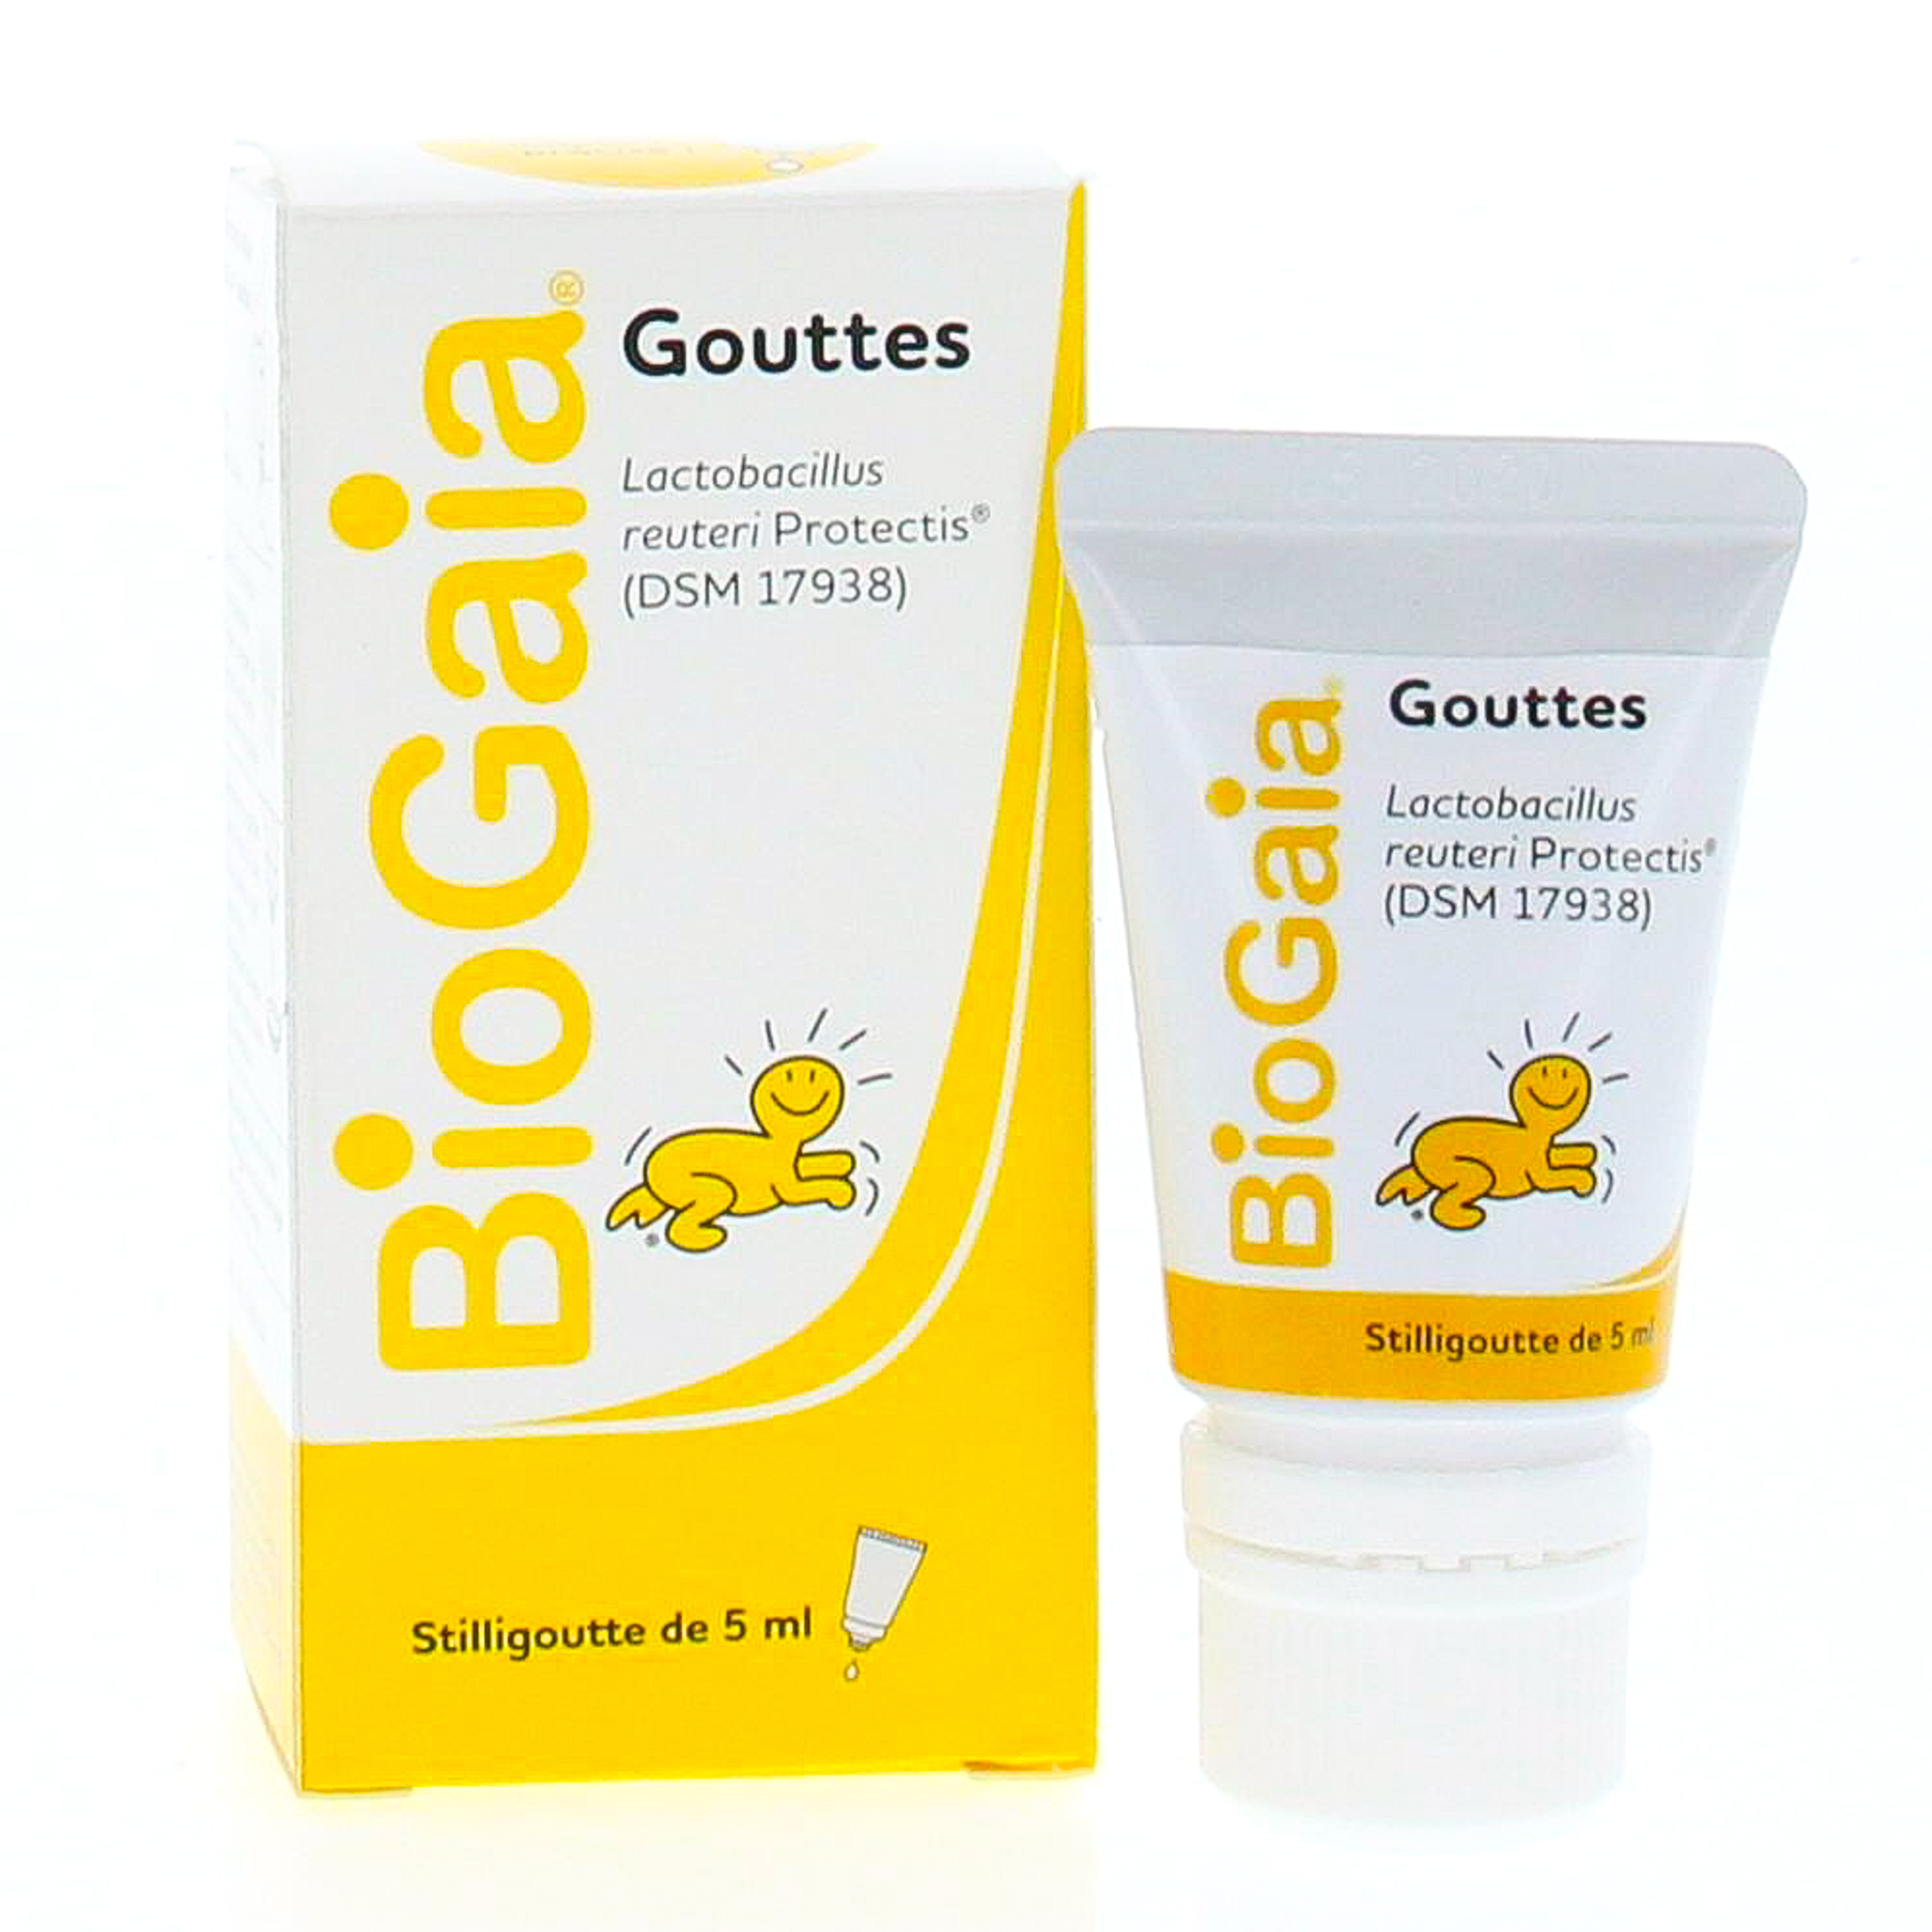 BIOGAIA - Probiotique Goutte Enfant - Flacon 5 ml